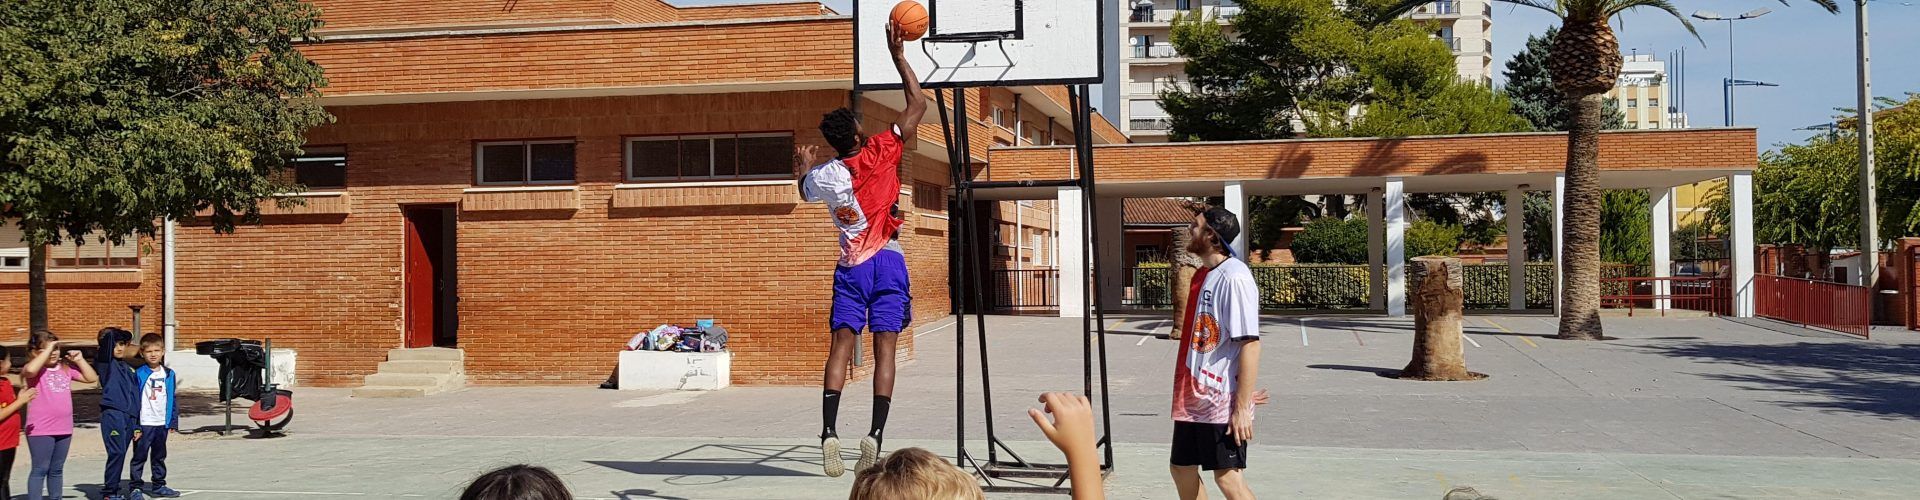 Fomentant el bàsquet a les escoles